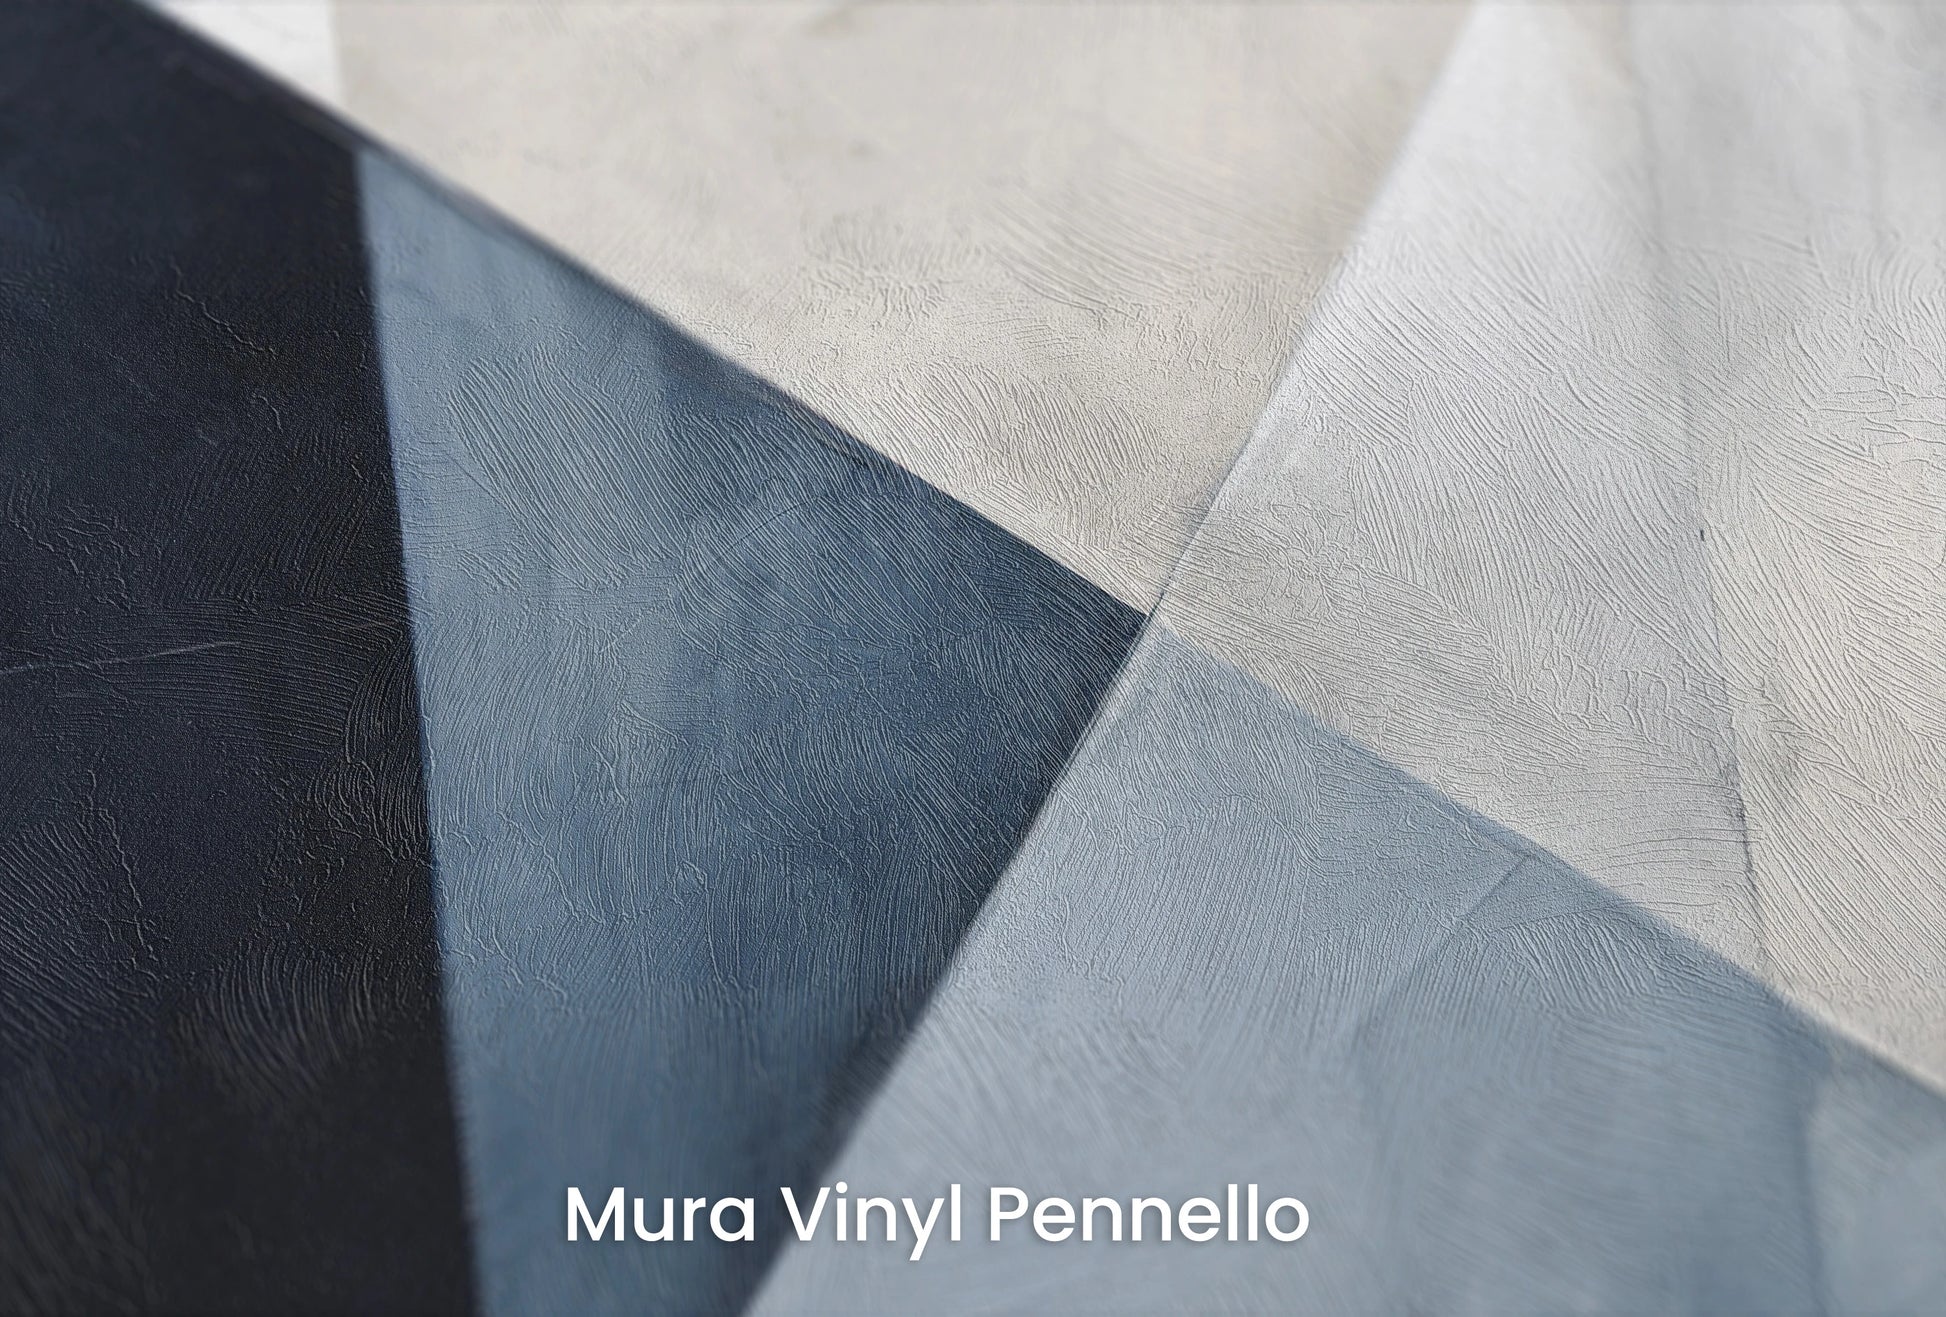 Zbliżenie na artystyczną fototapetę o nazwie Monochrome Sails II na podłożu Mura Vinyl Pennello - faktura pociągnięć pędzla malarskiego.